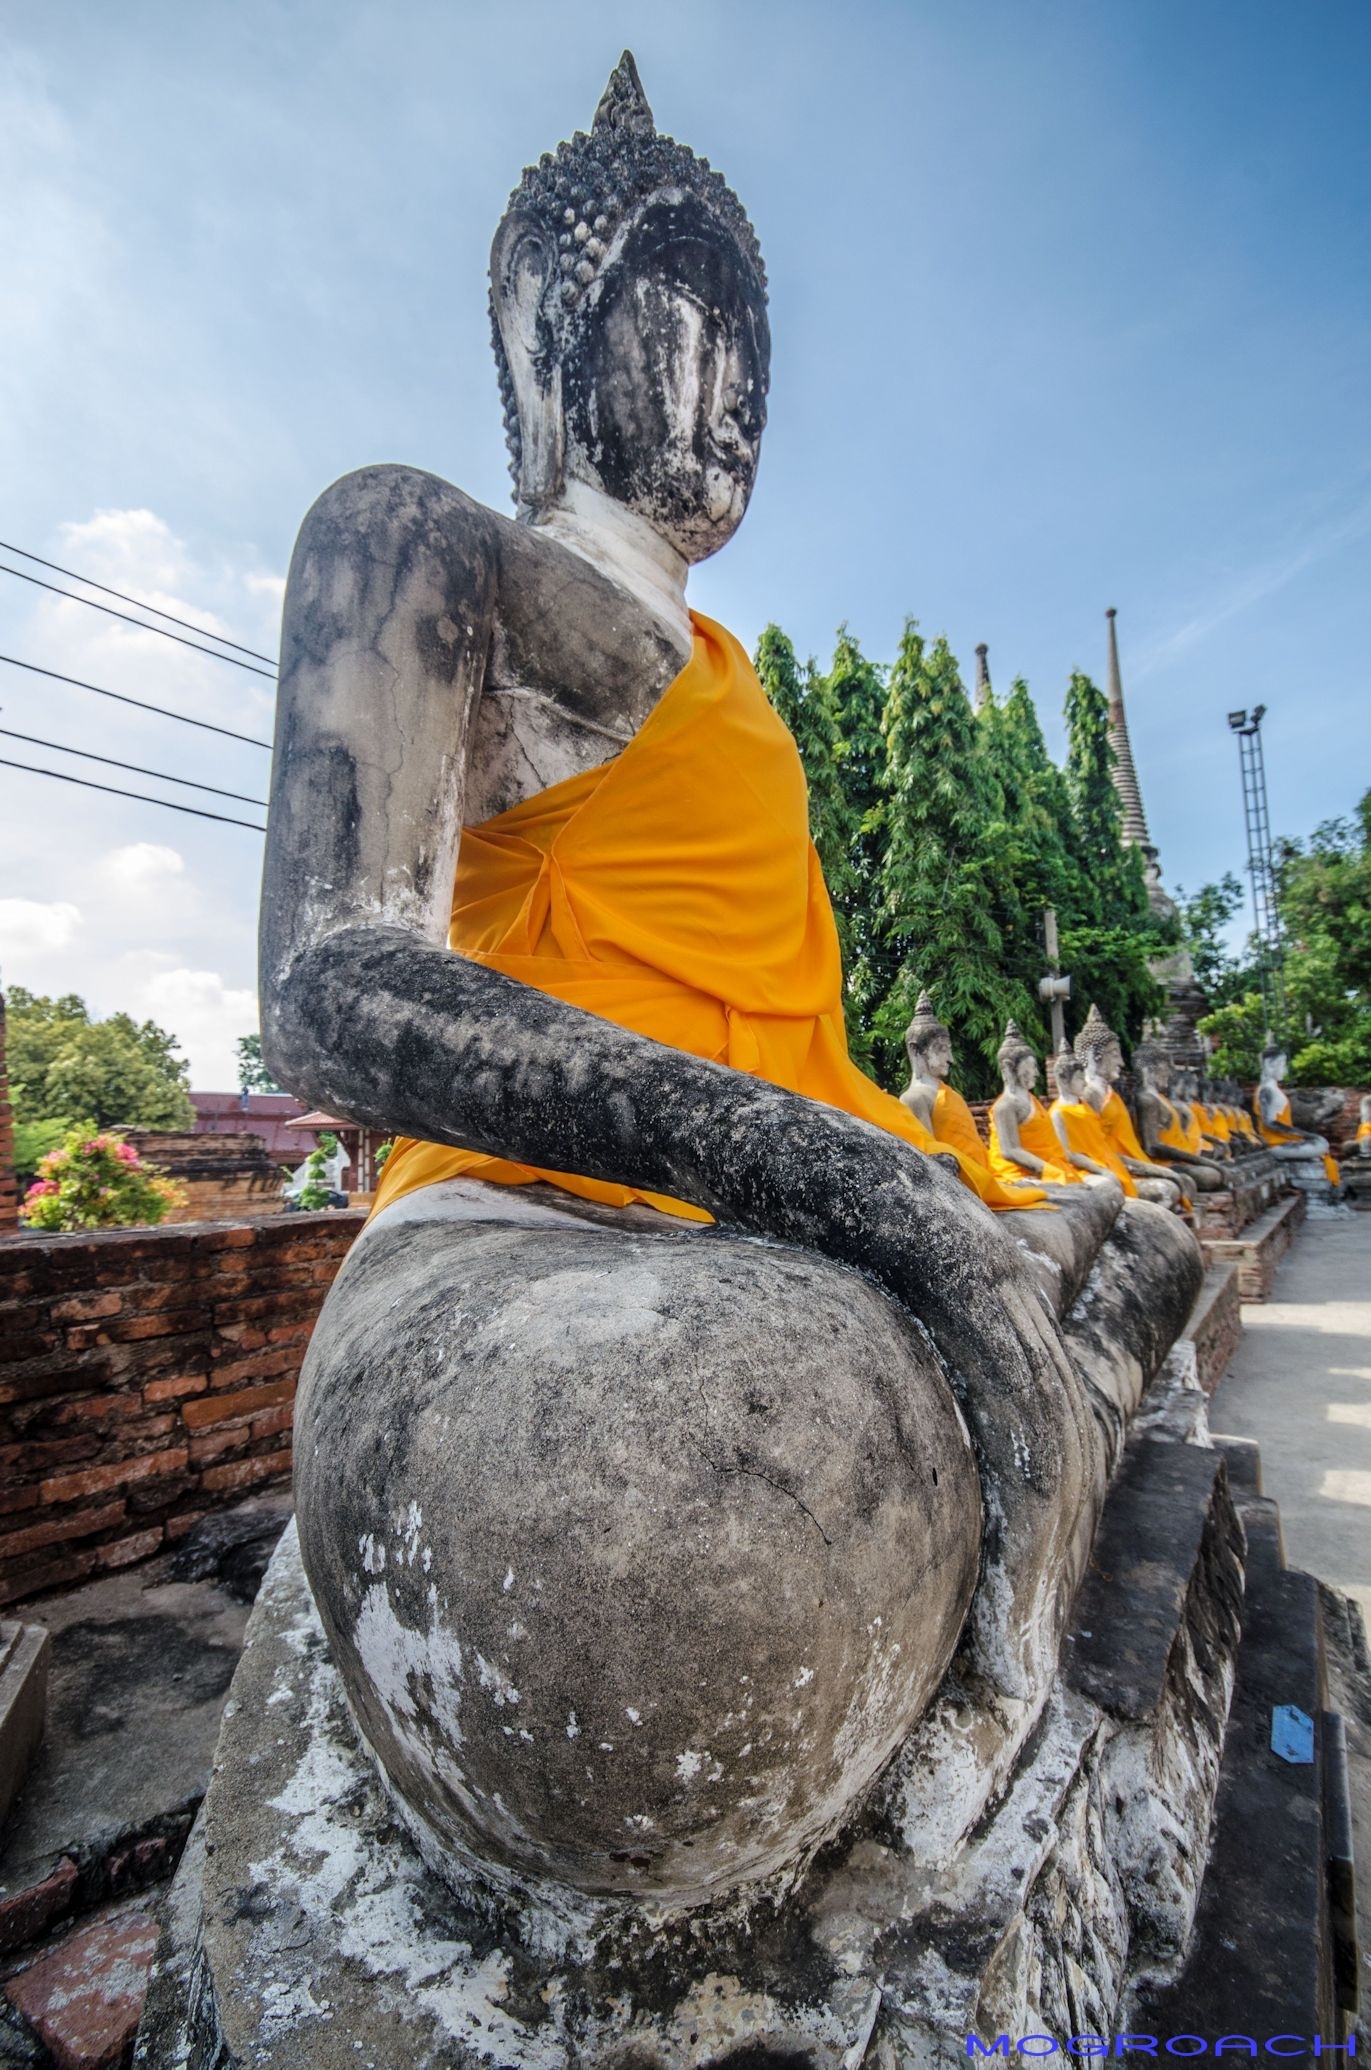 Ayutthaya, Thailand